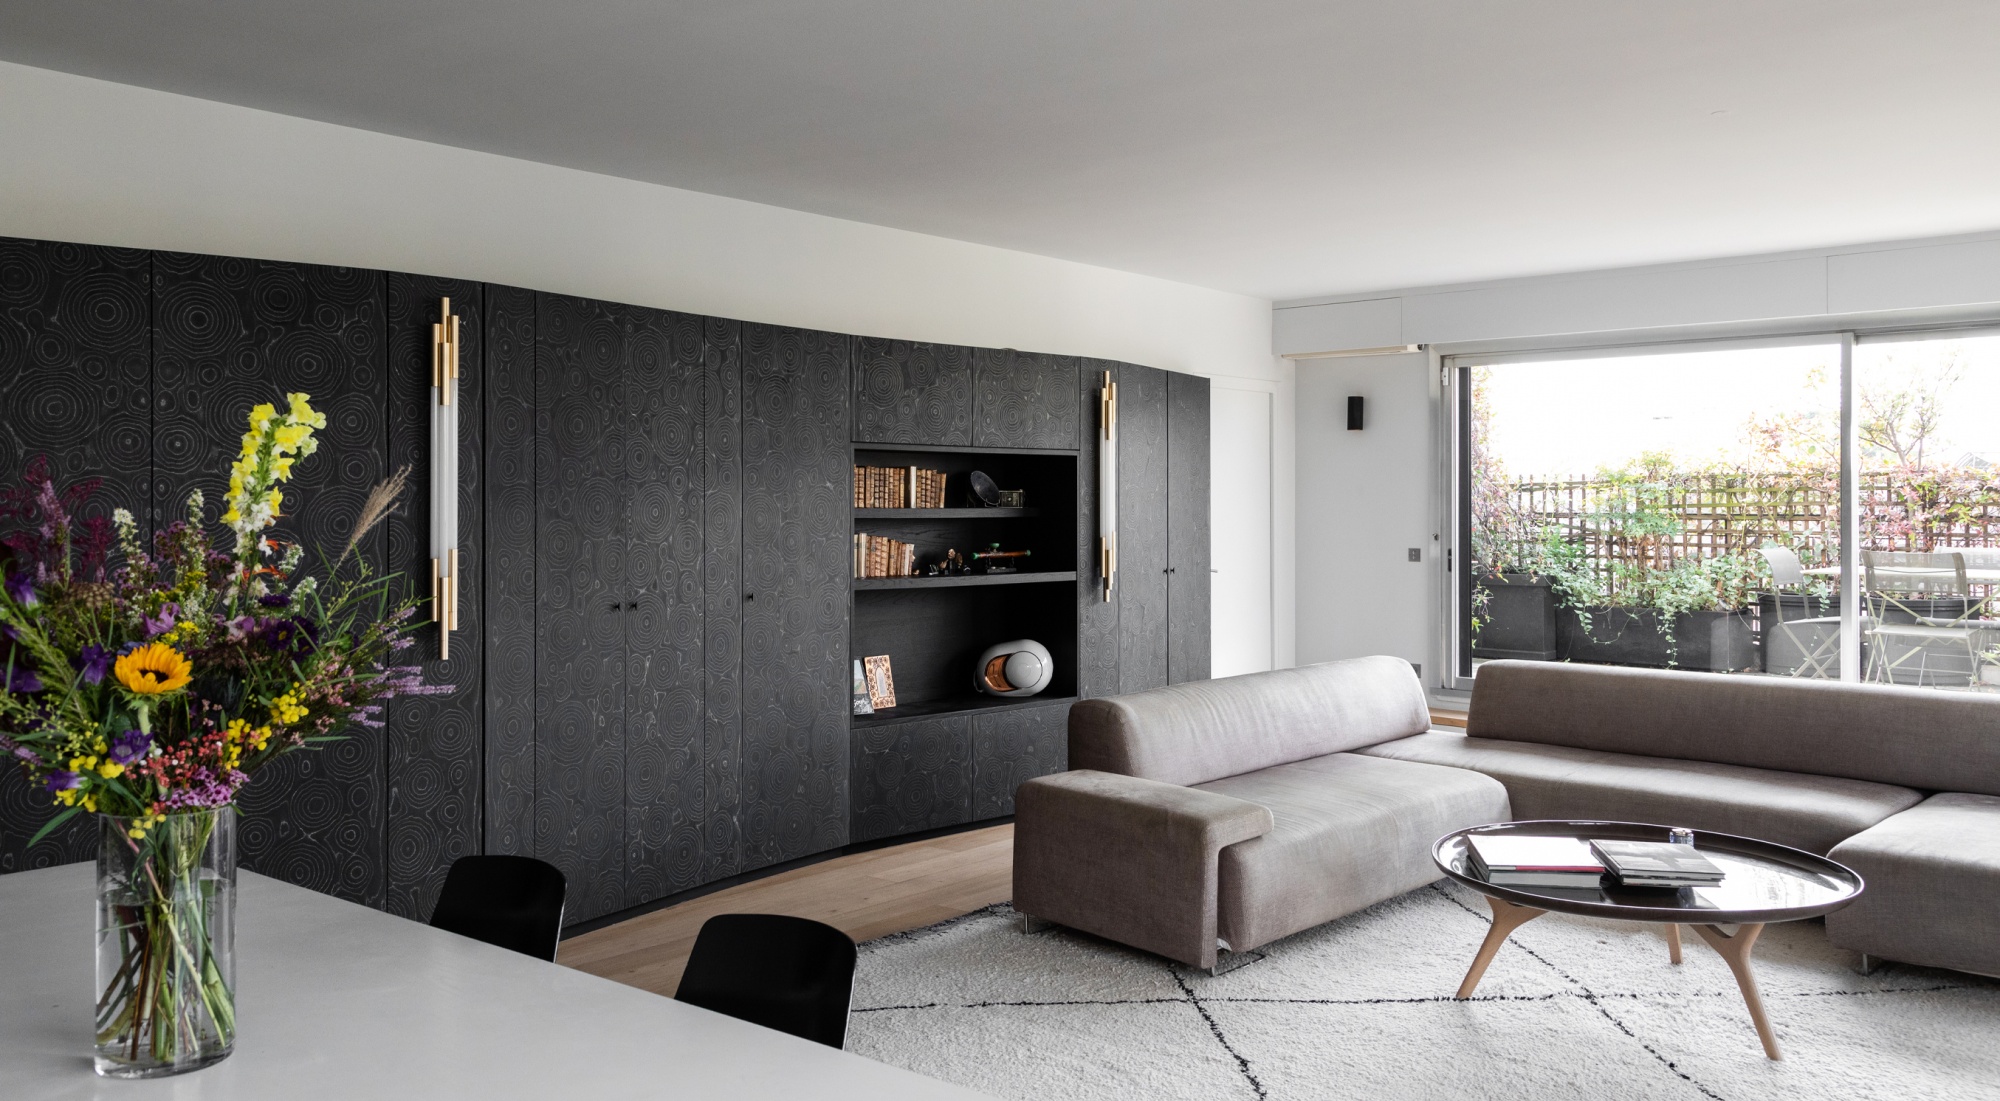 Apartment  in Paris | Design Benjamin Godiniaux